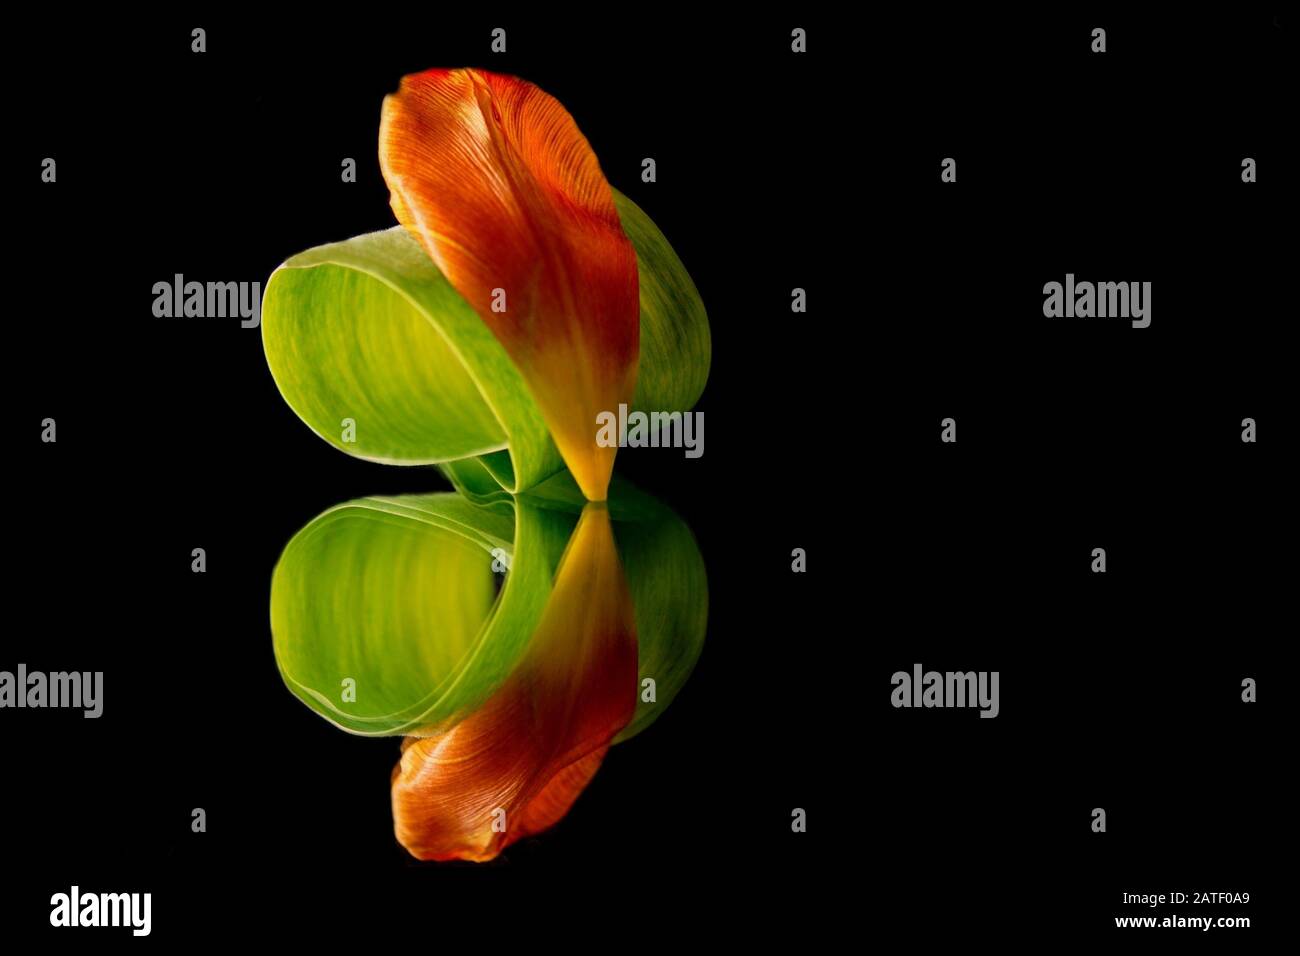 Tulipano la mia visione - tulipano arancione petalo e foglia su uno specchio sfondo nero Foto Stock